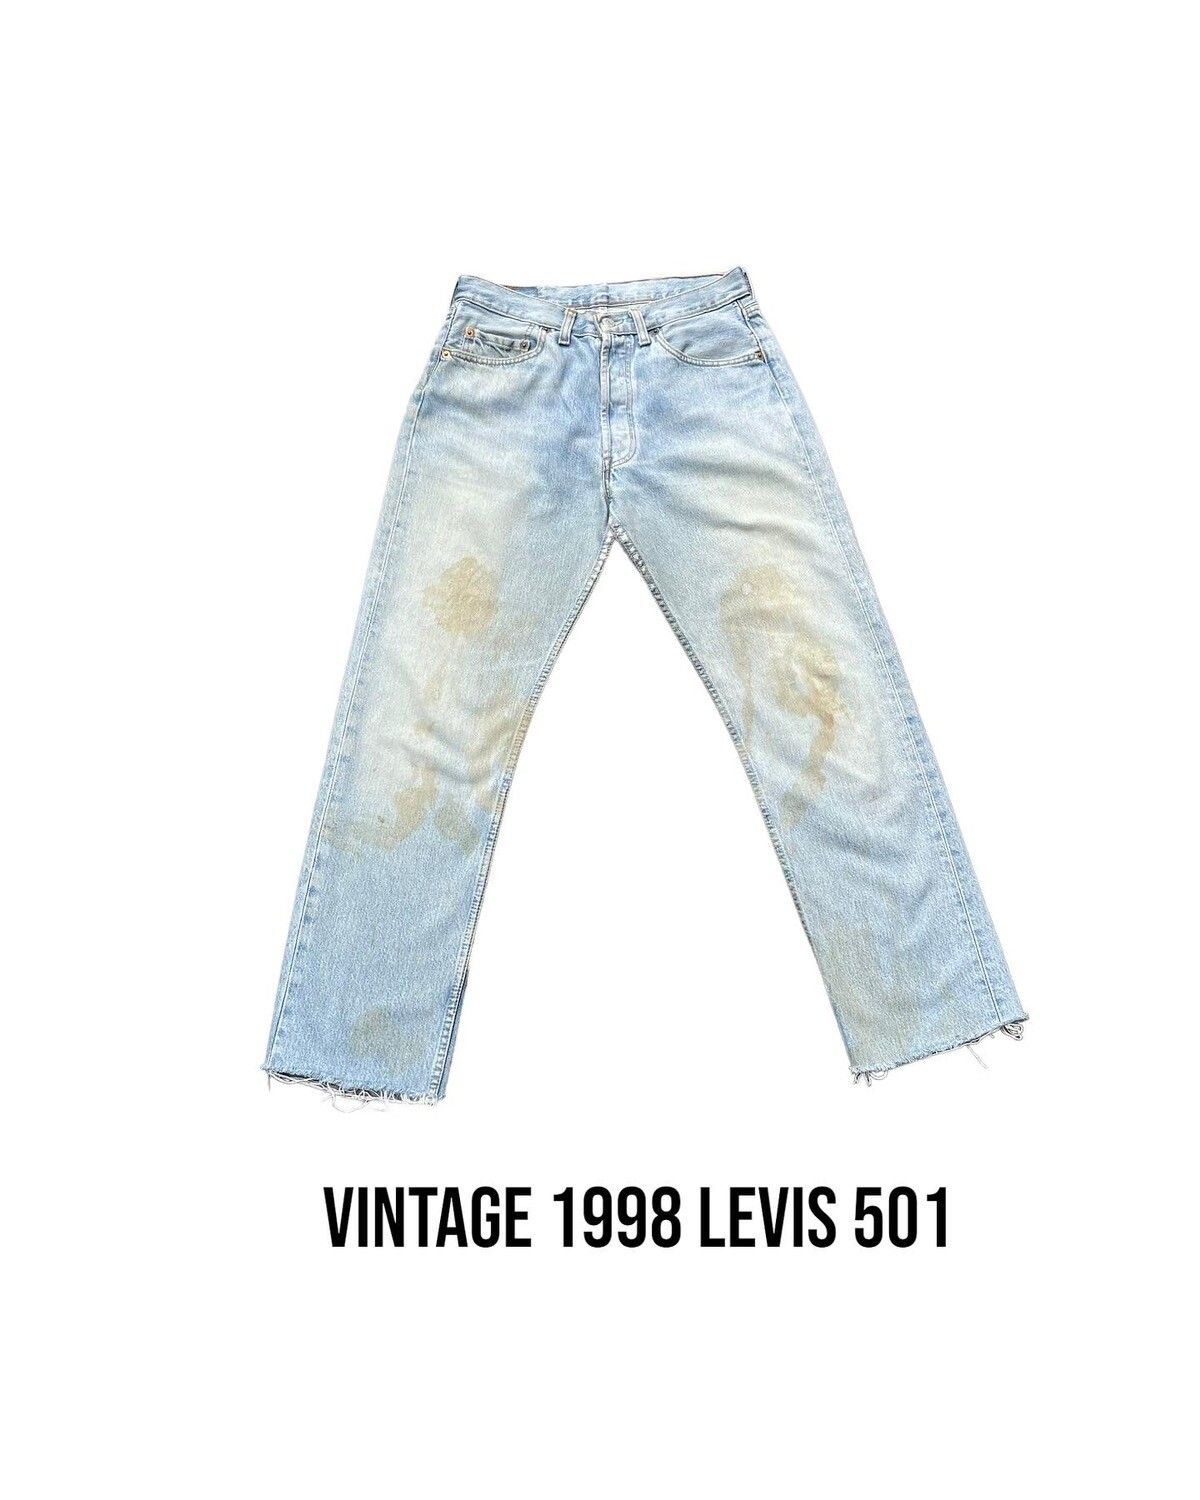 Vintage Vintage 1998 Levis 501 e UK Size US 31 - 1 Preview